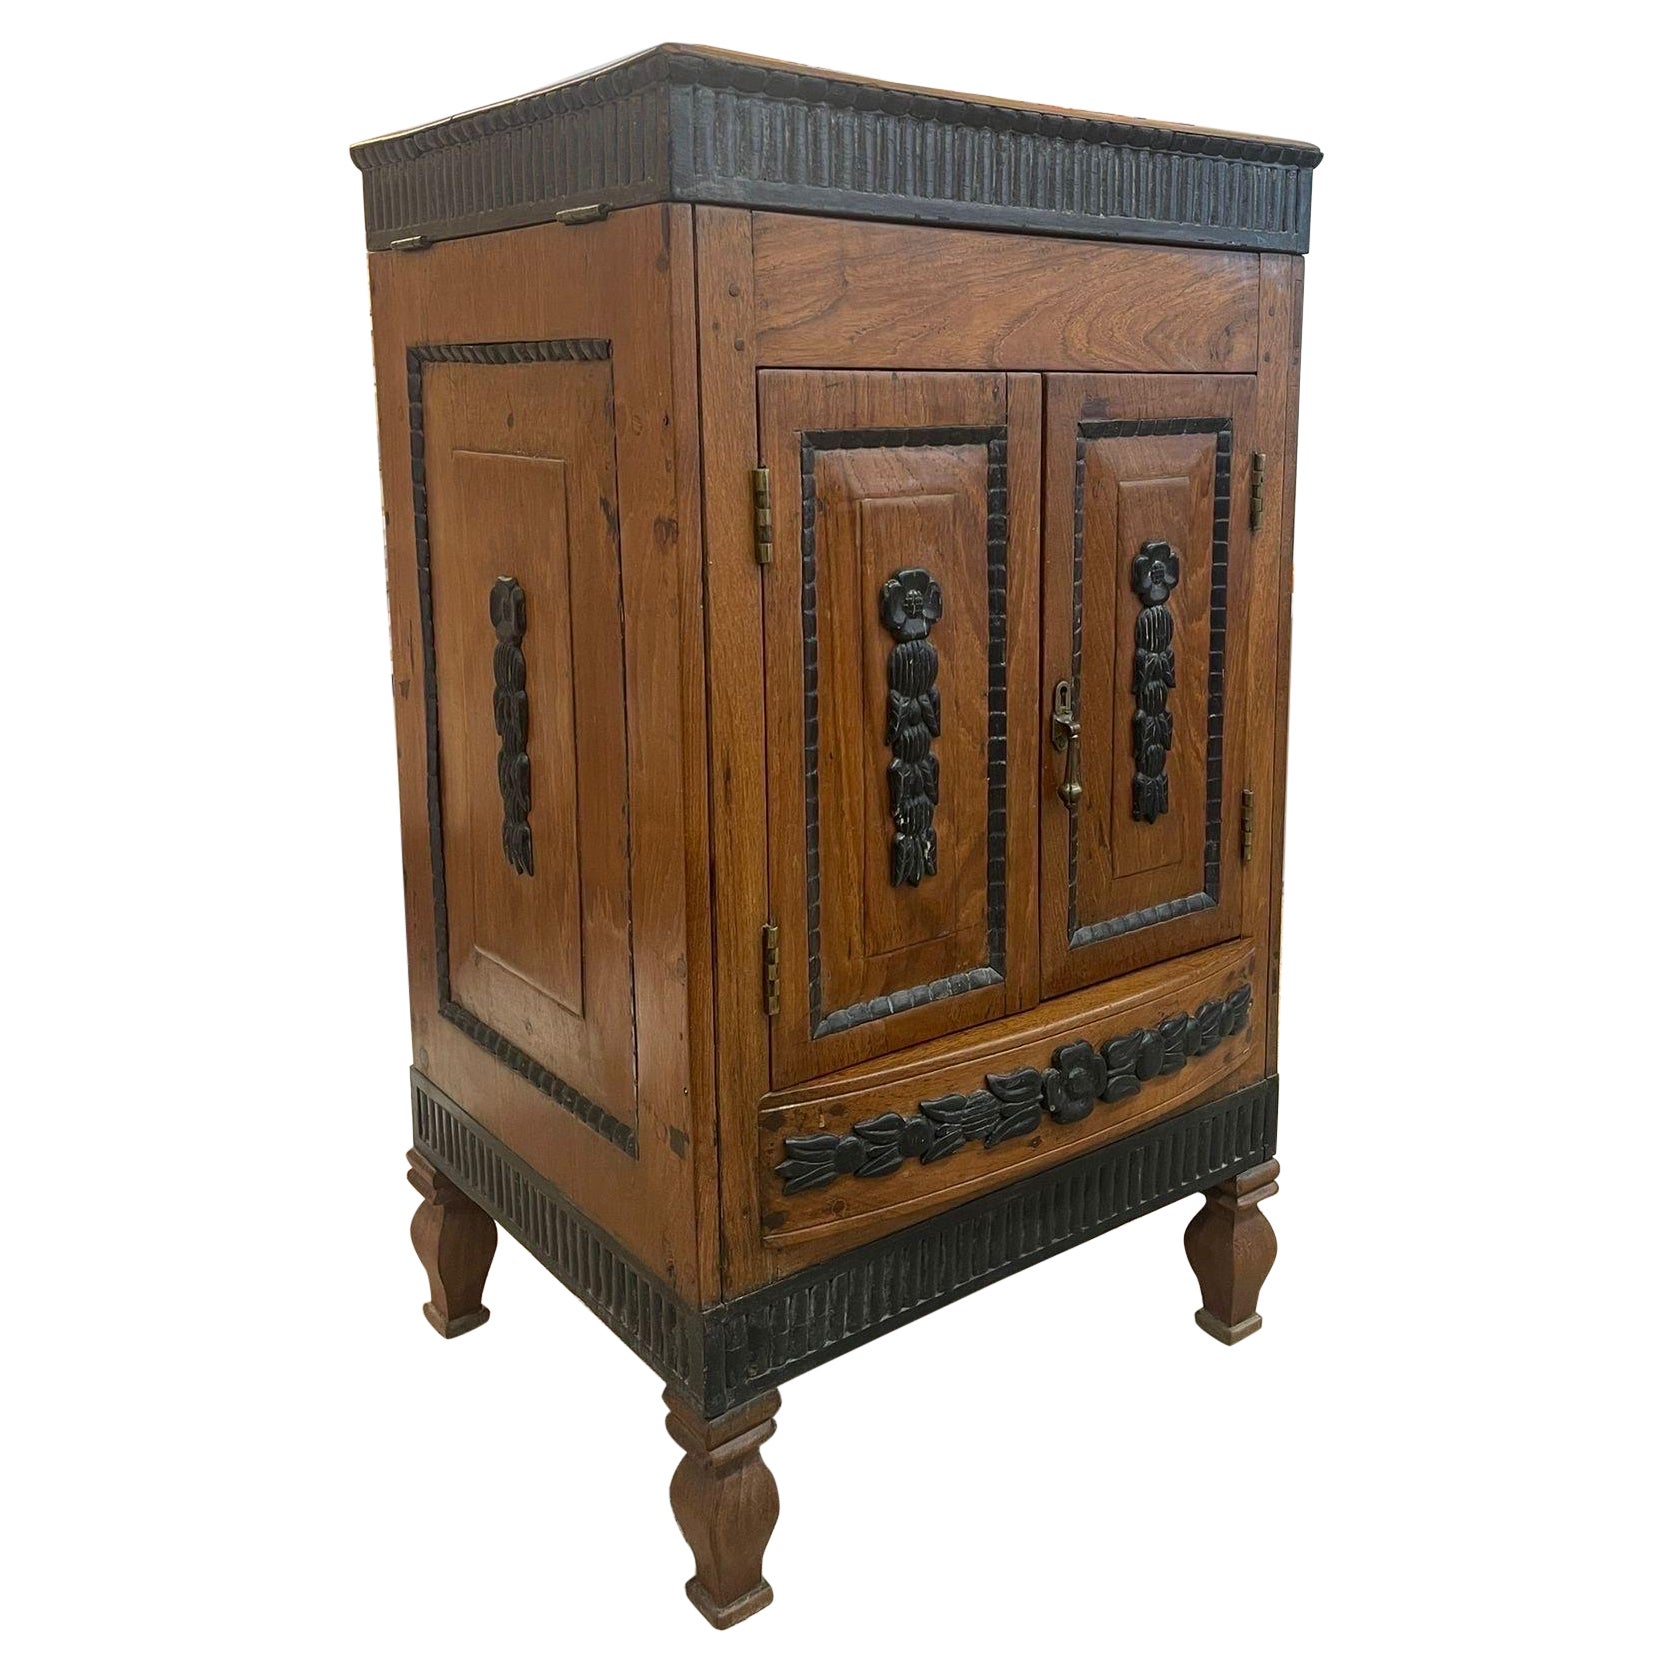 Vieille armoire de style colonial néerlandais avec accents en bois sculpté.